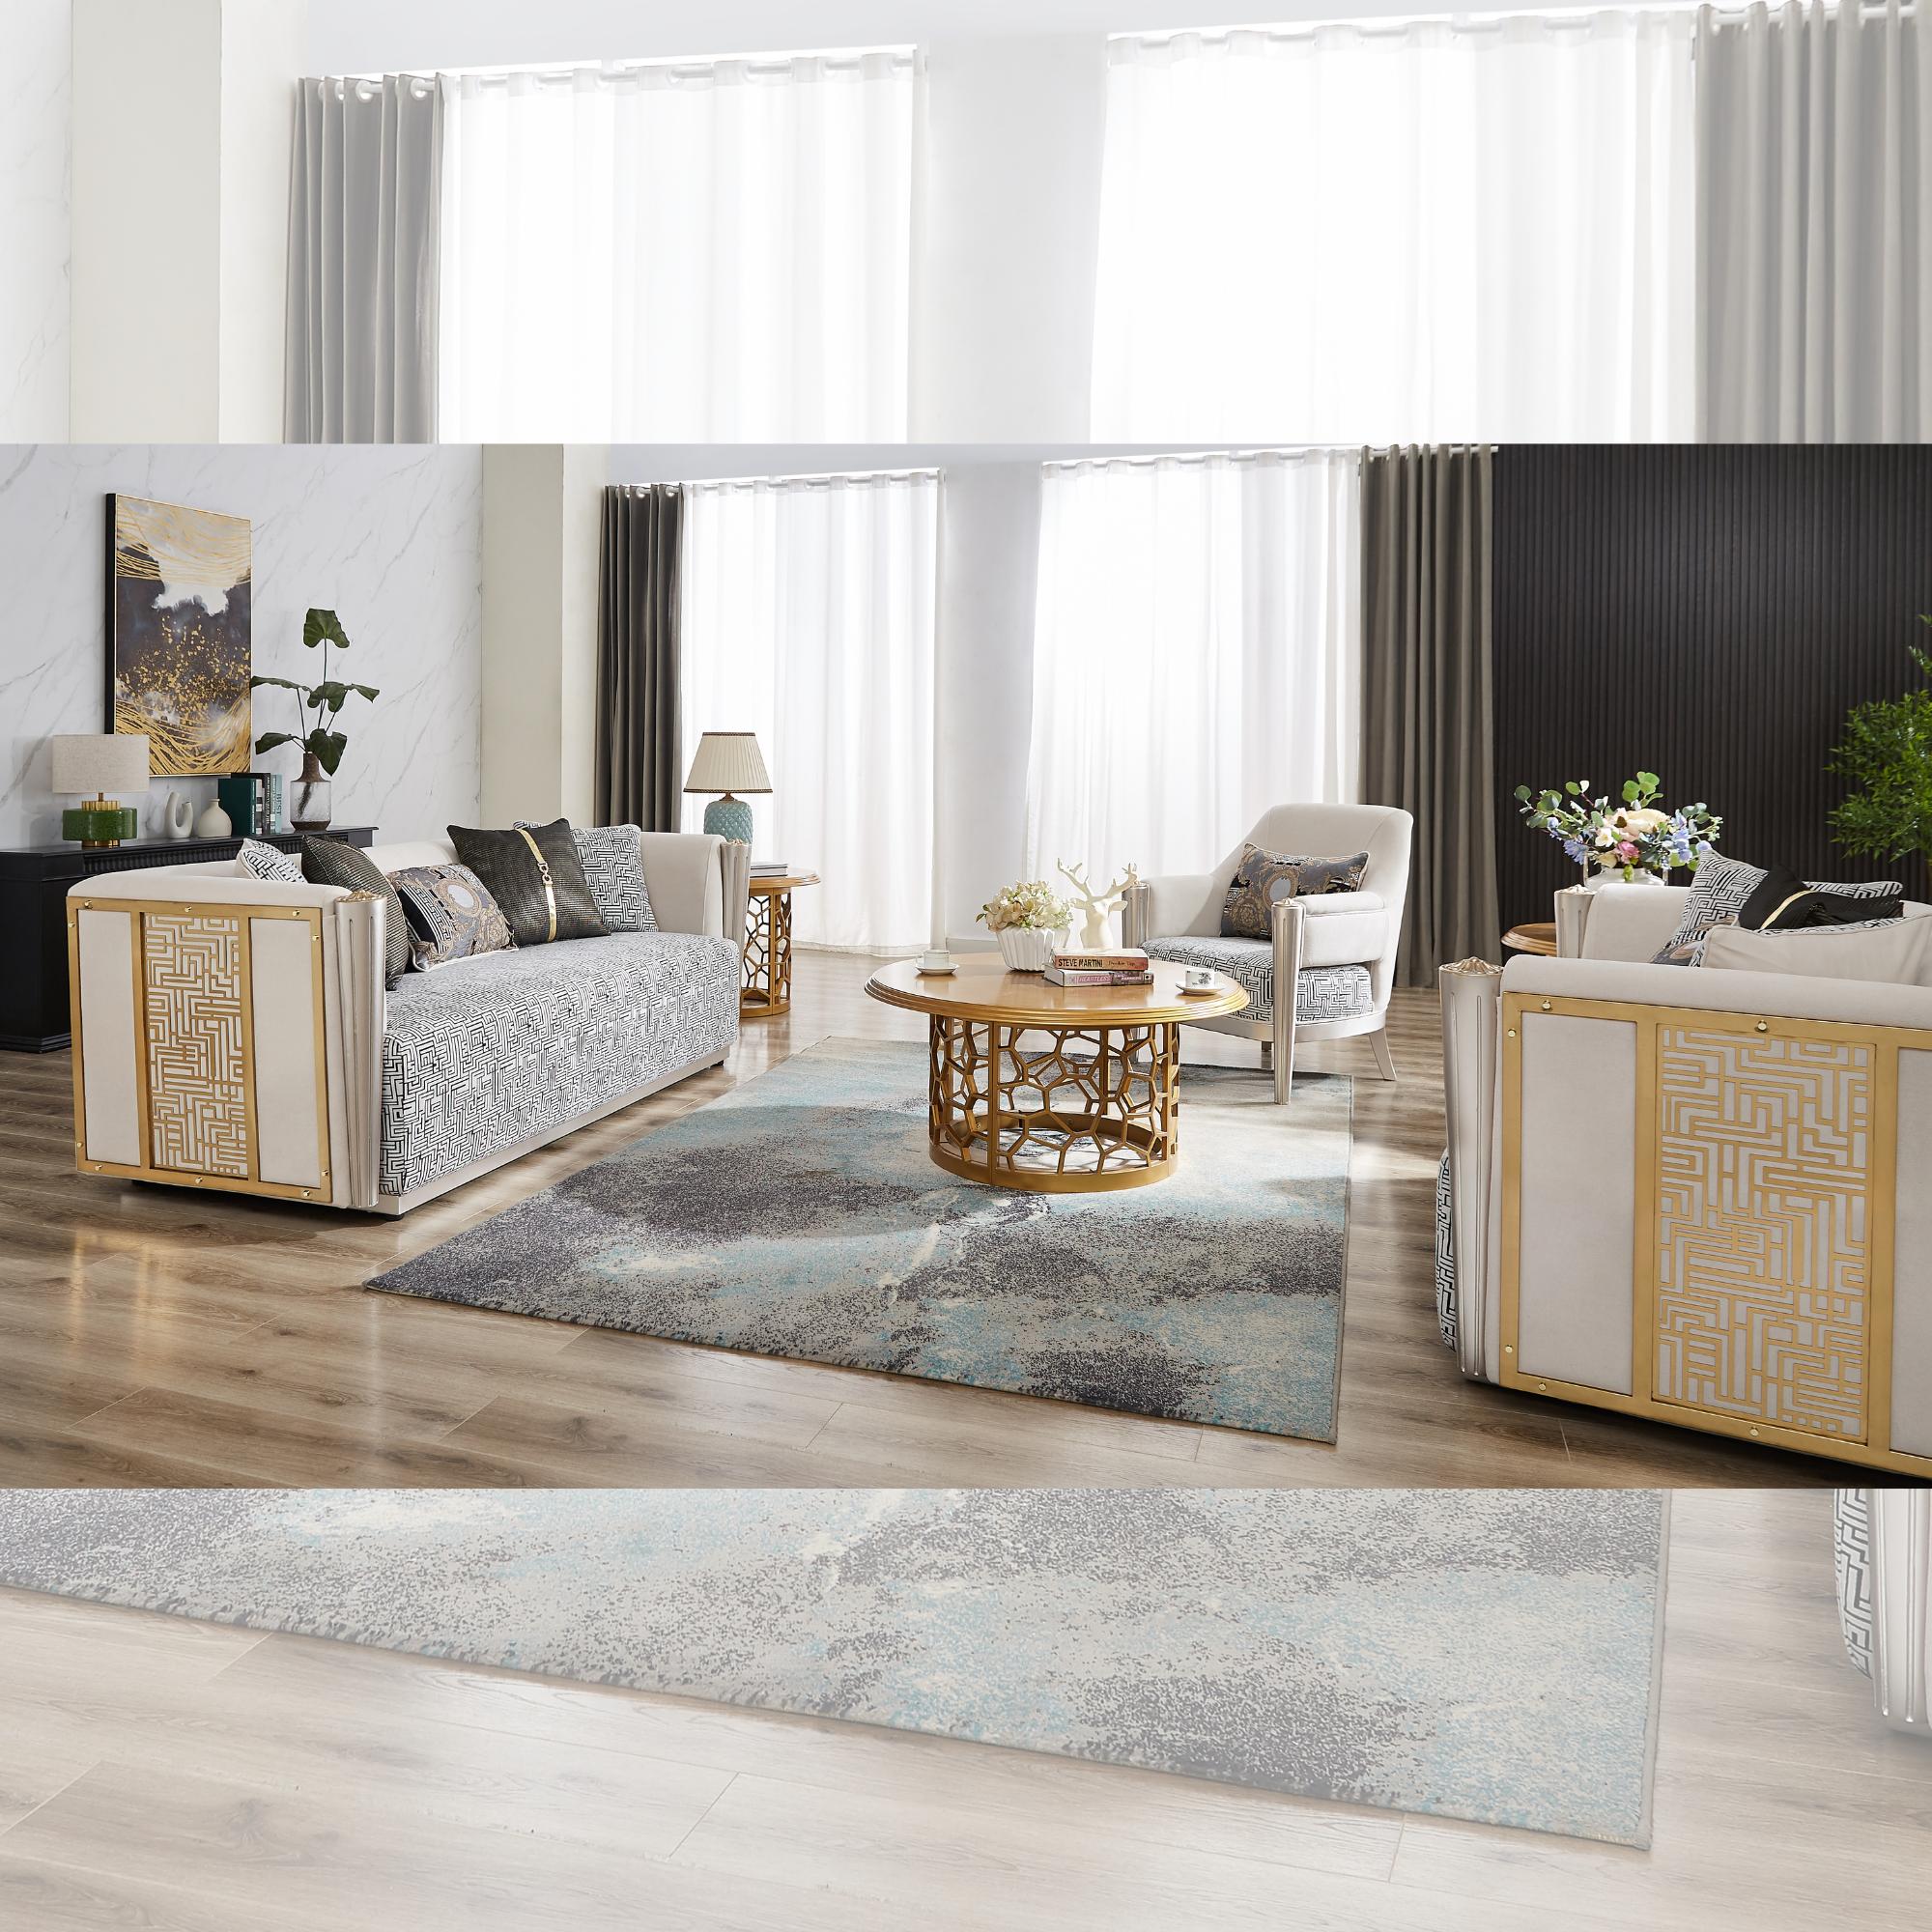 

    
Homey Design Furniture HD-9038 Chair HD-C9038 Chair White/Gray/Gold HD-C9038
